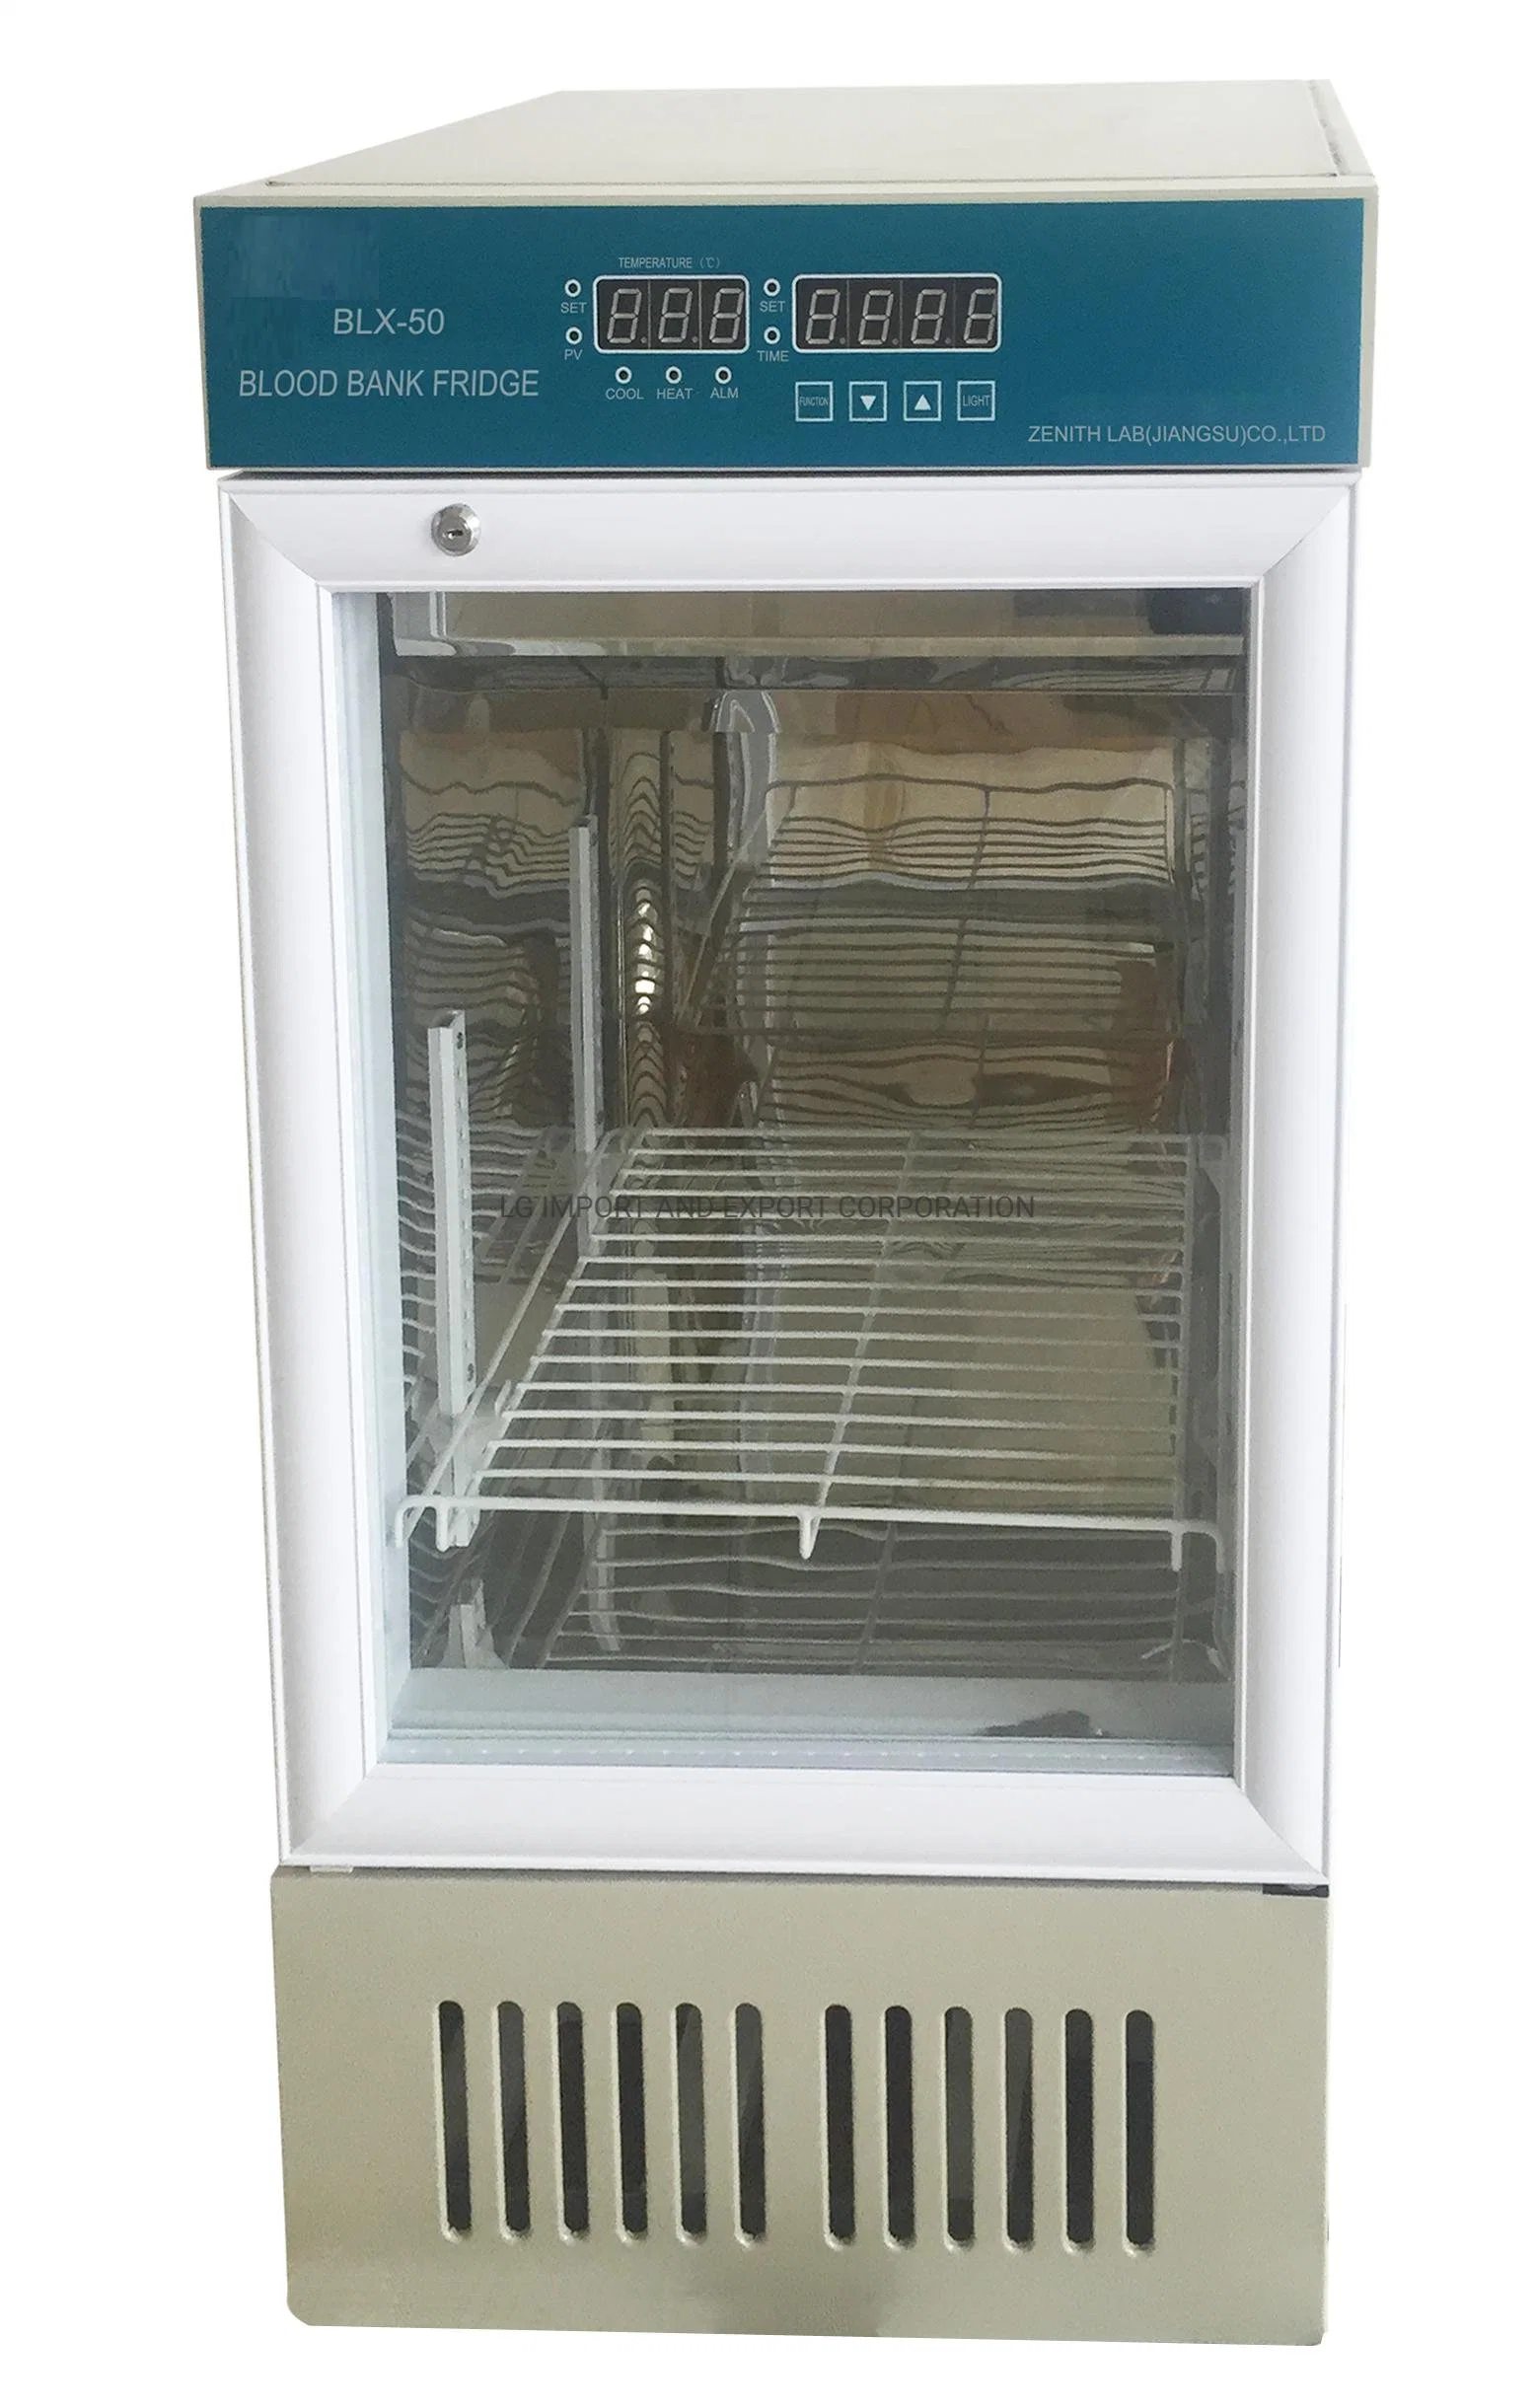 Blood Bank Refrigerator LG-Blx-50/80 for Medical Use